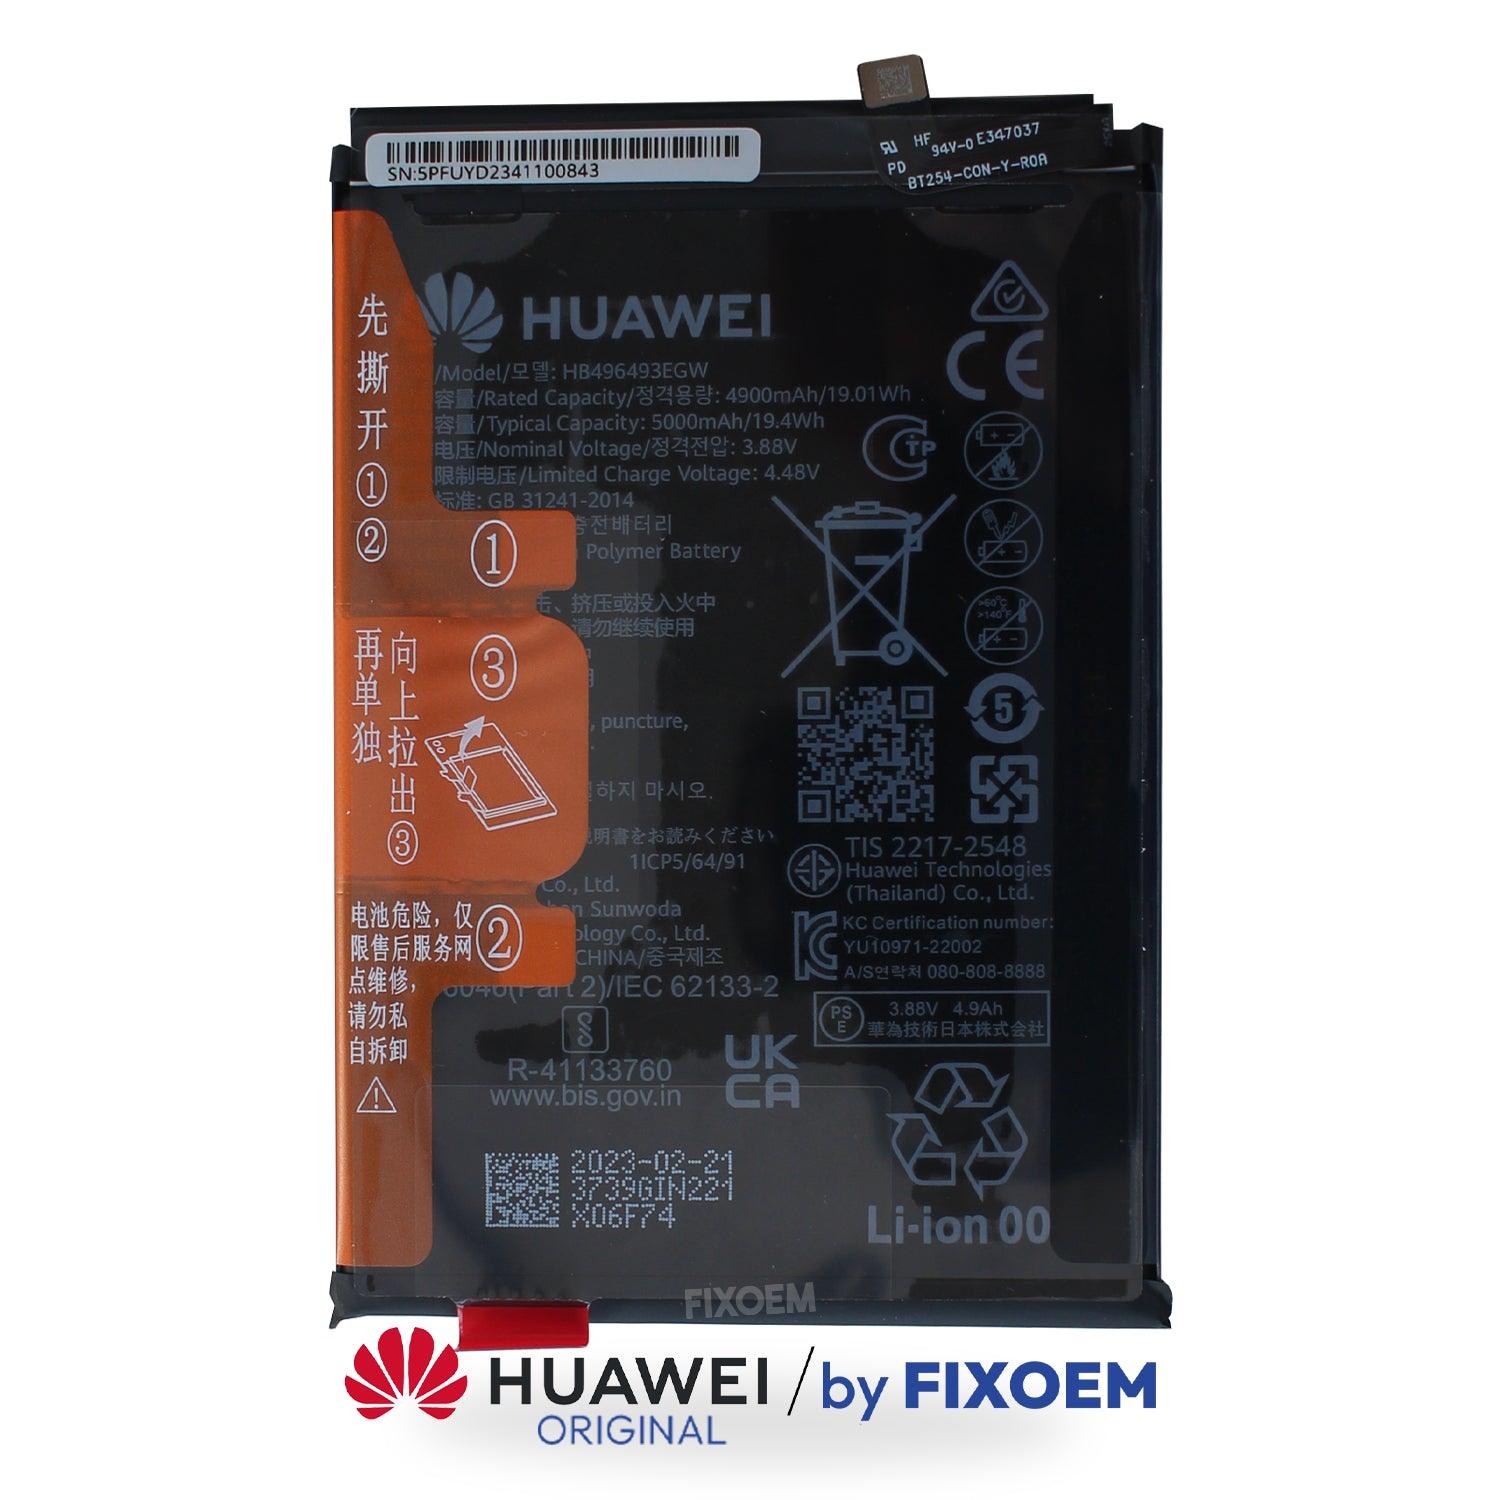 Bateria Huawei Original Mate 50 Pro Plus-HB496493EGW Original |+2,000 reseñas 4.8/5 ⭐